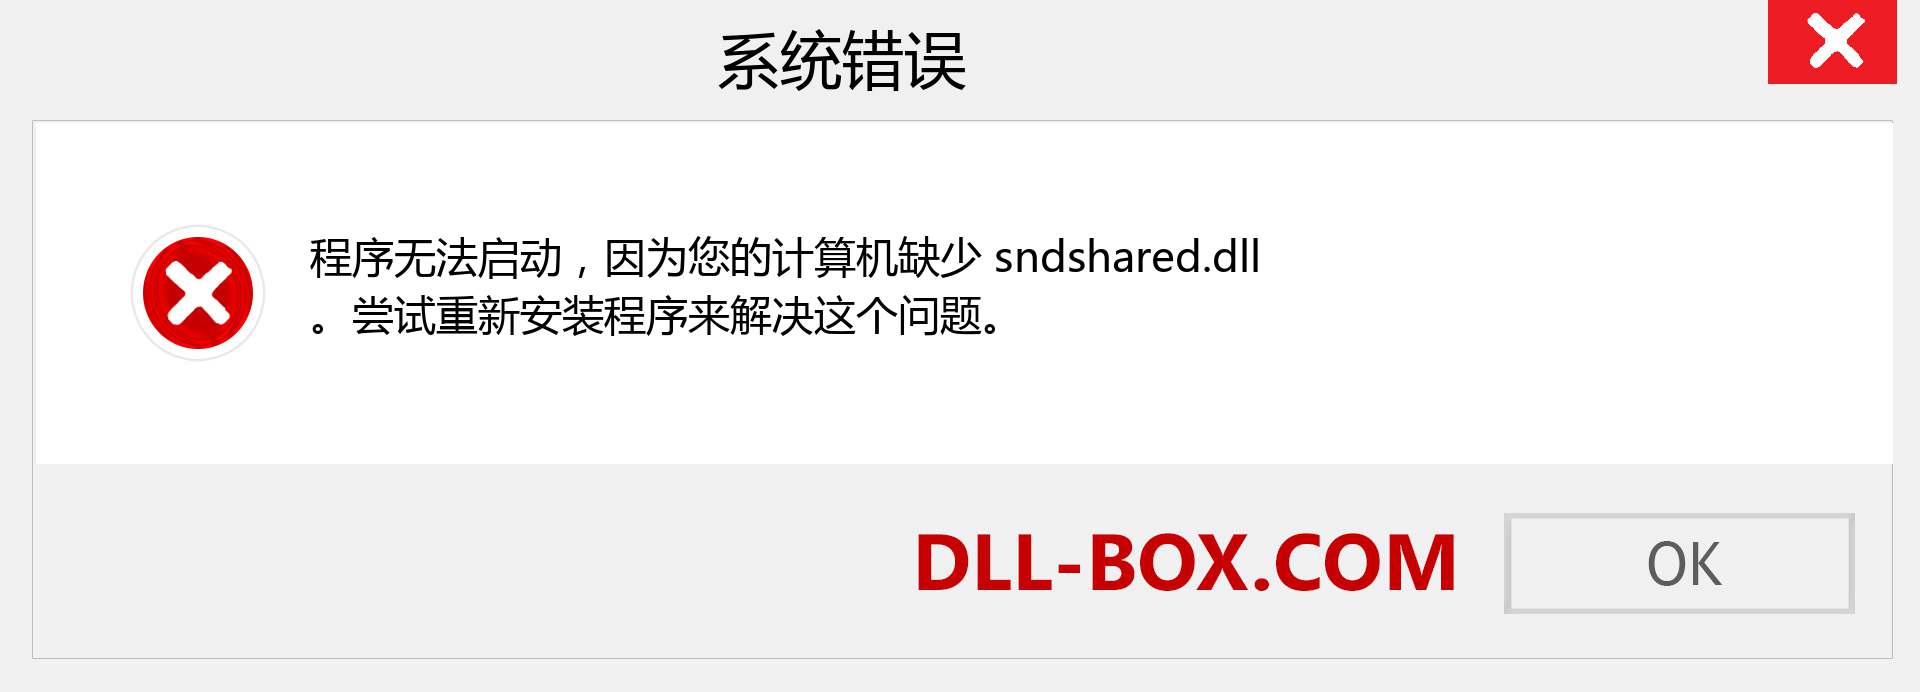 sndshared.dll 文件丢失？。 适用于 Windows 7、8、10 的下载 - 修复 Windows、照片、图像上的 sndshared dll 丢失错误